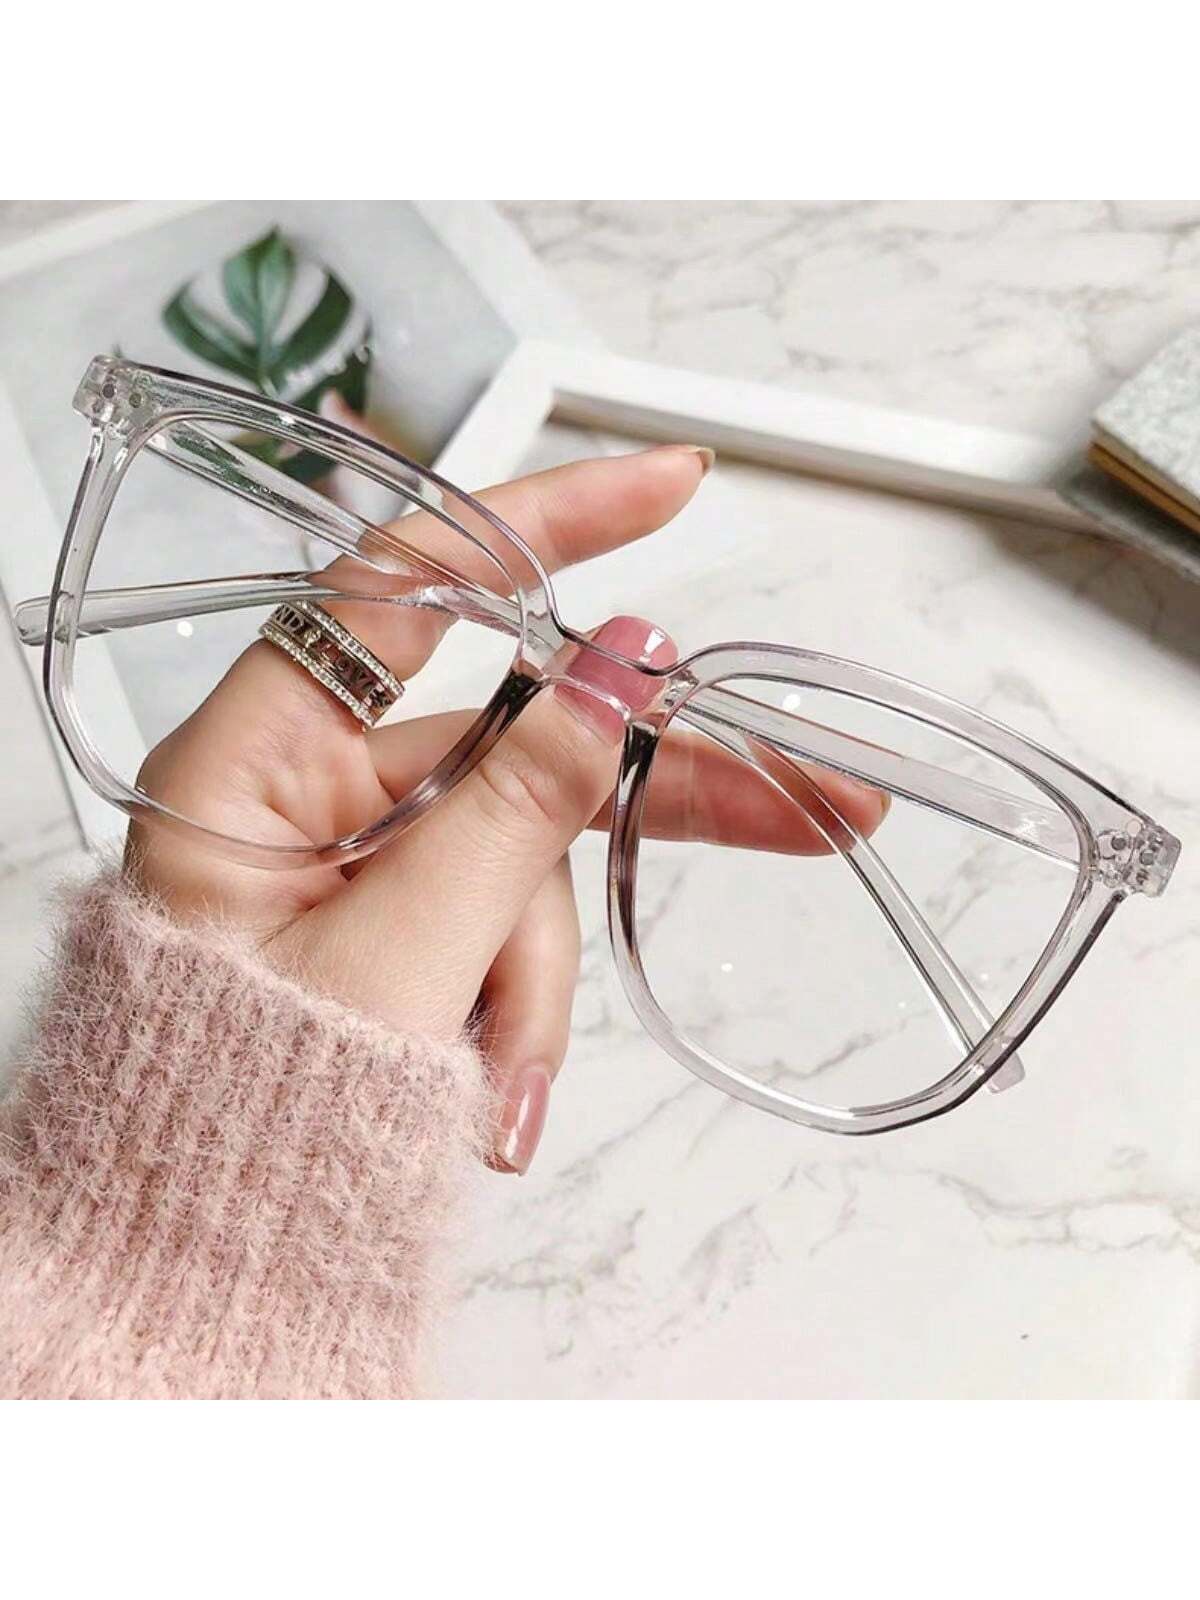 цена 1 шт. женские удобные простые очки в прозрачной оправе в стиле ретро для чтения и серфинга в Интернете